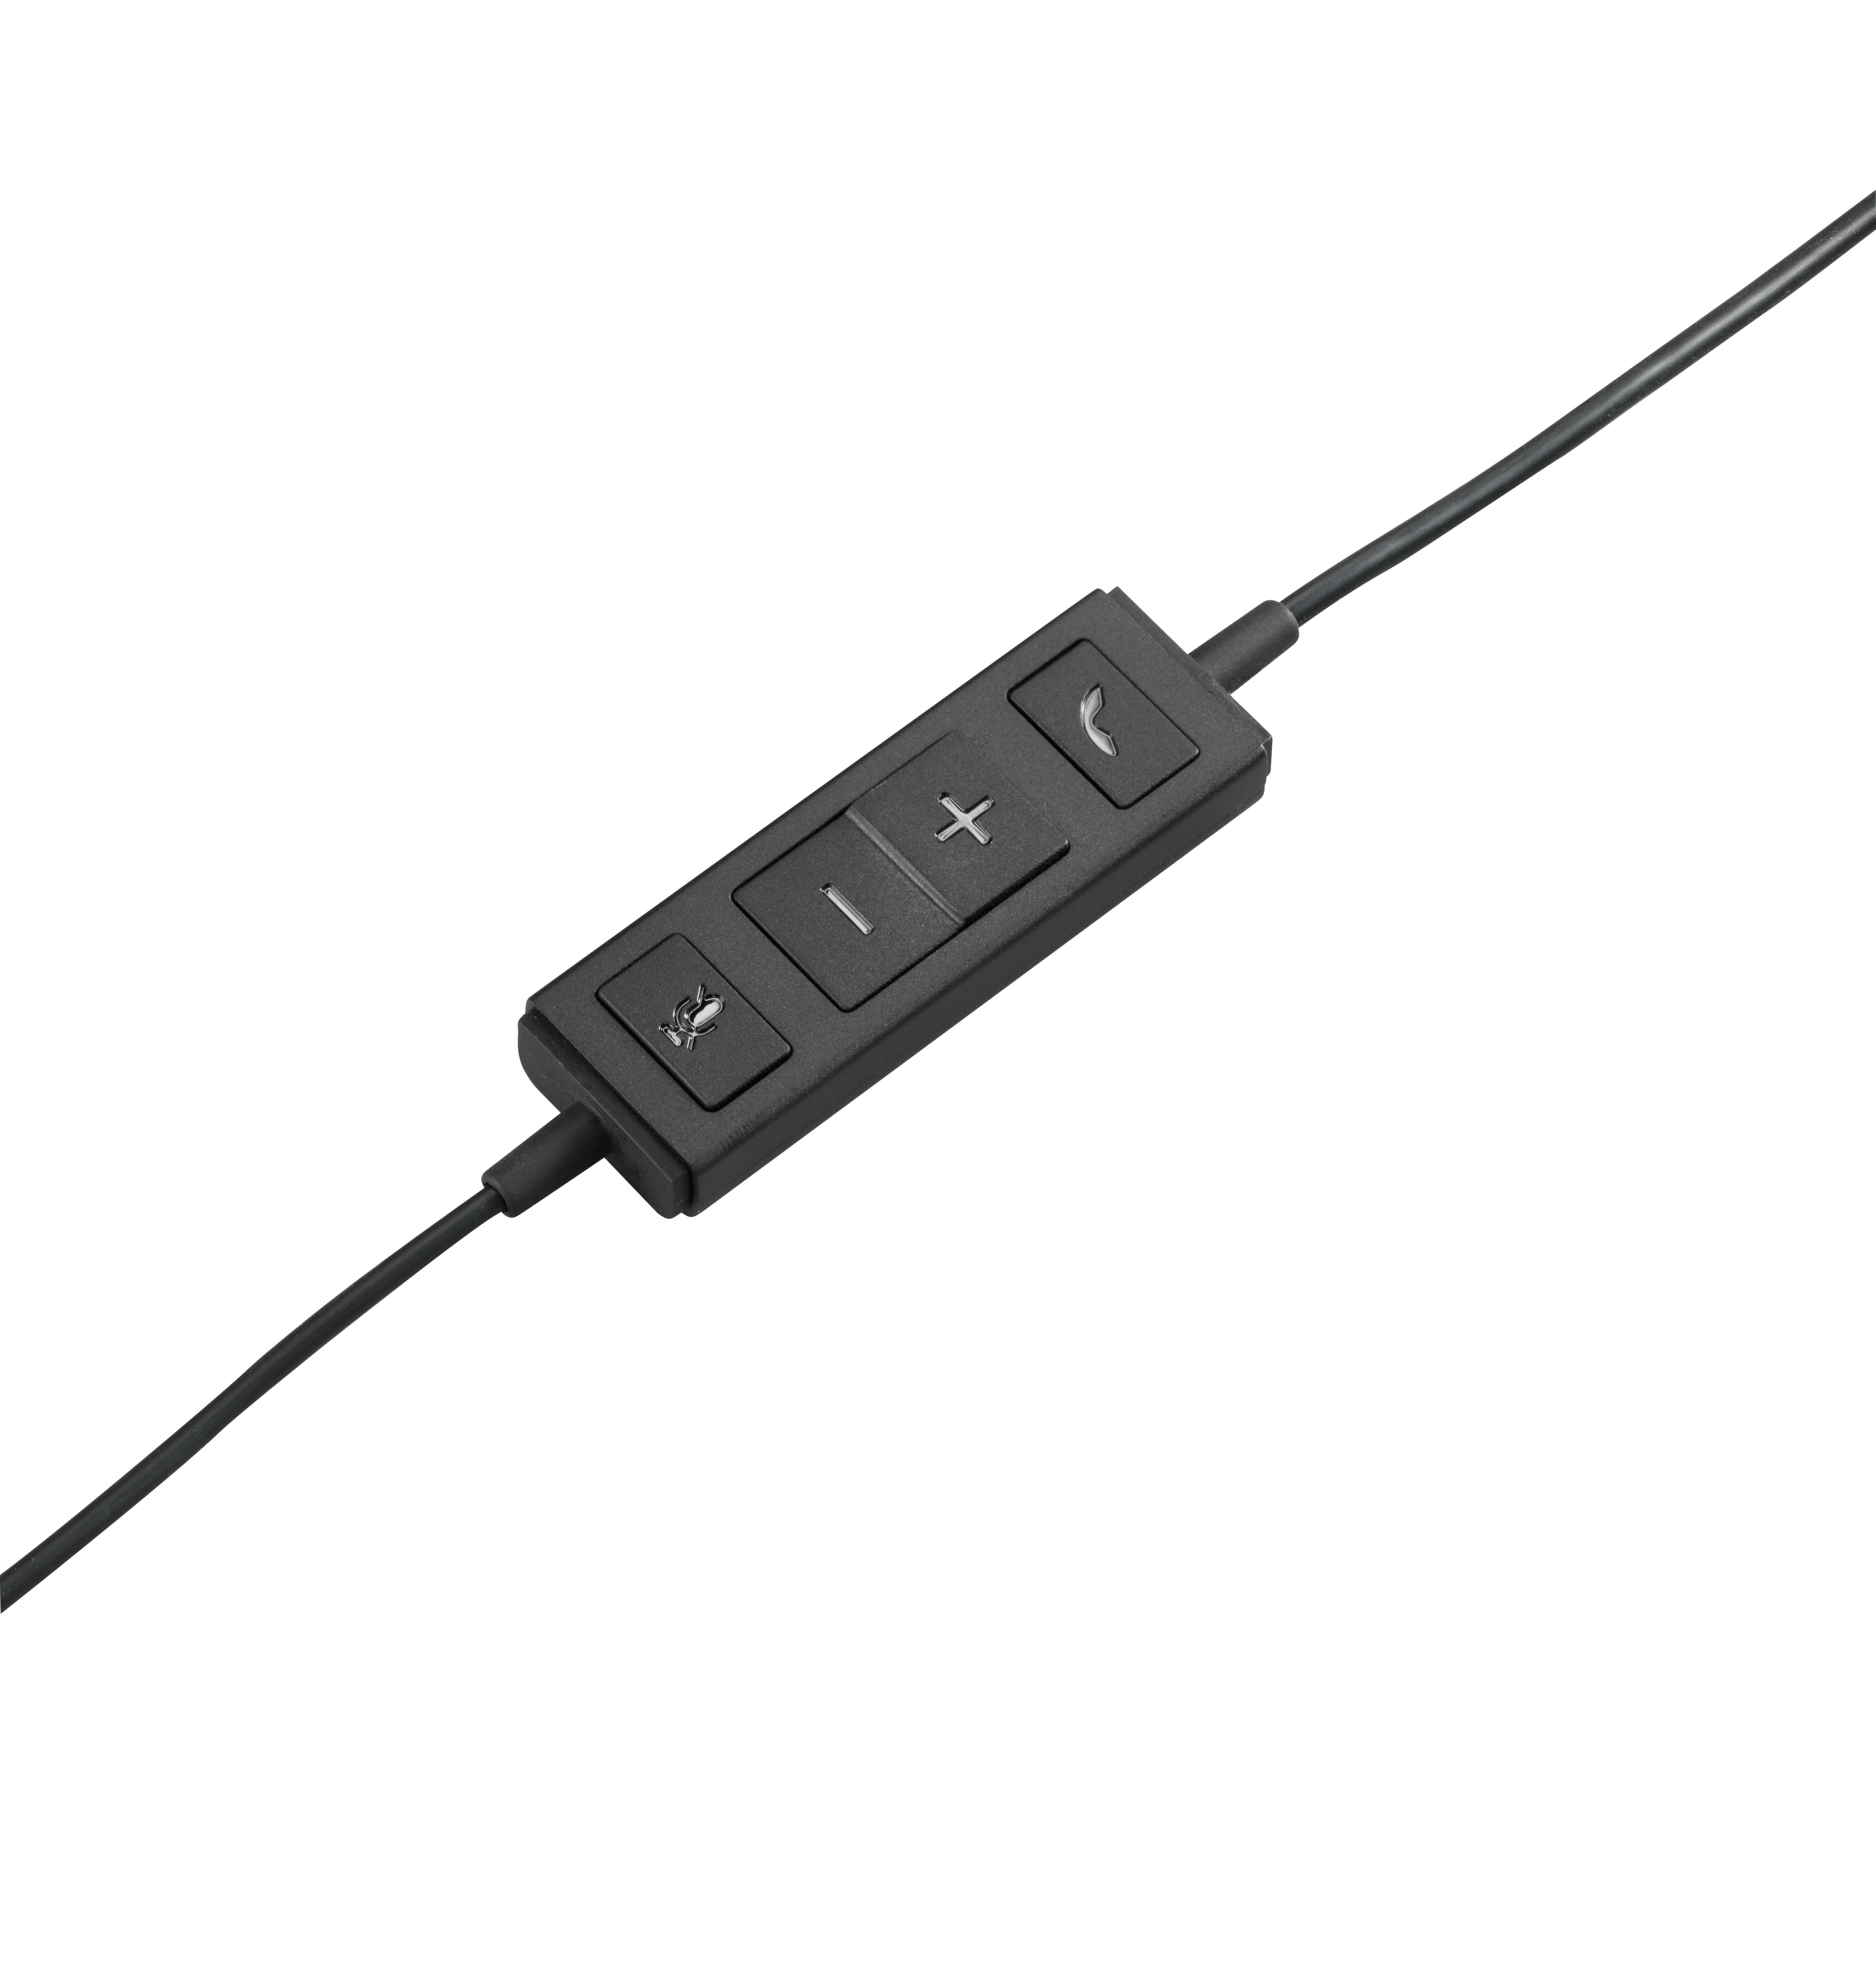  Logitech 960 USB - Auriculares para ordenador, color negro :  Electrónica